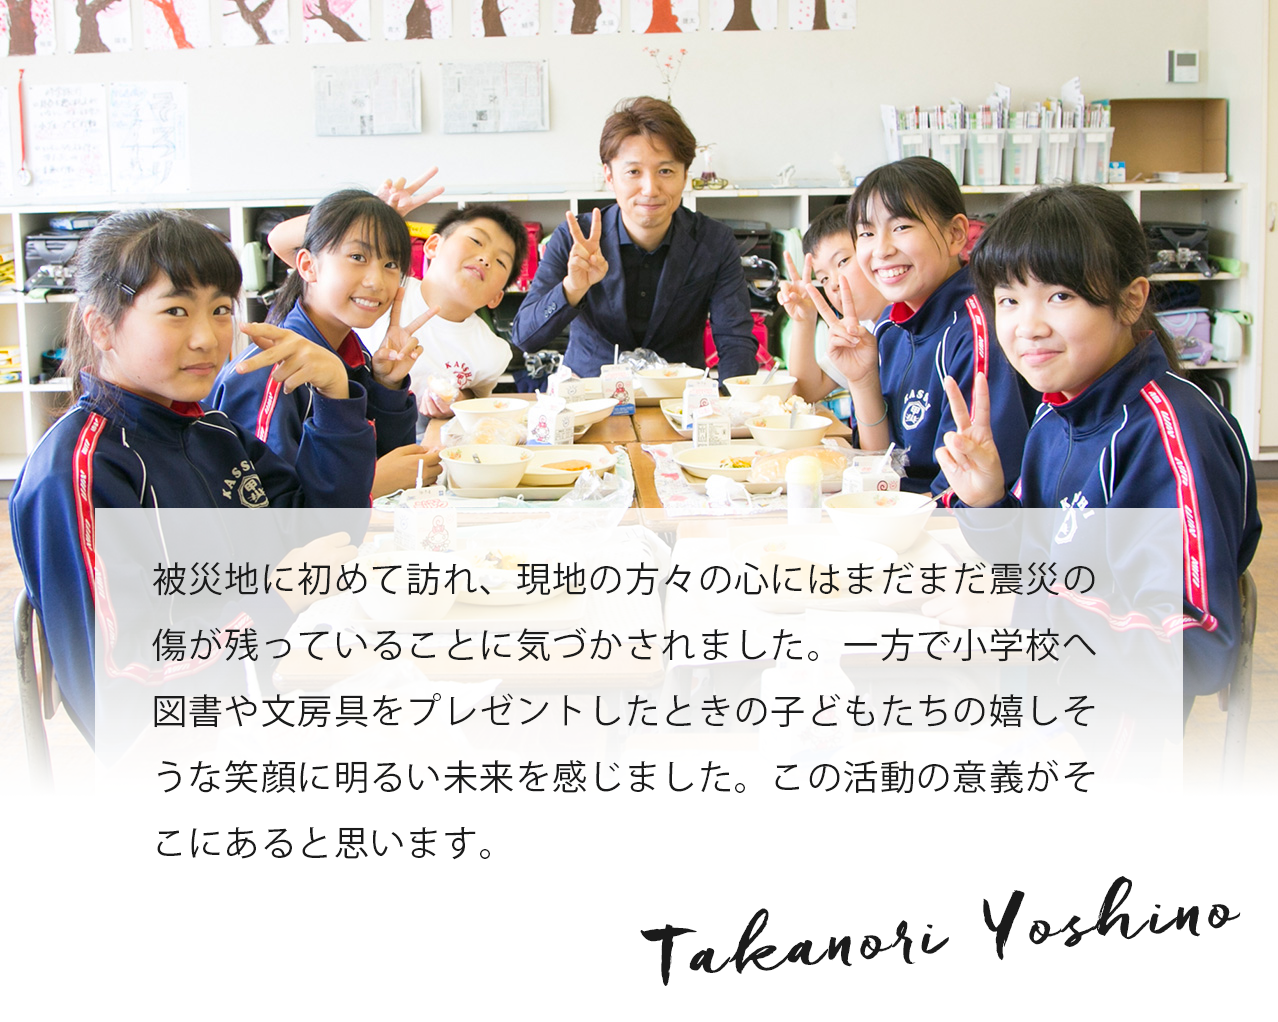 被災地を訪れ毎回思うのは、「日常は当たり前ではないんだな！」ということです。今回は私のチームの方々の町でした。そのため、一層感慨深かったです。日々に感謝して、これからもできる限りのサポートをさせていただきたいです。 Takanori Yoshino